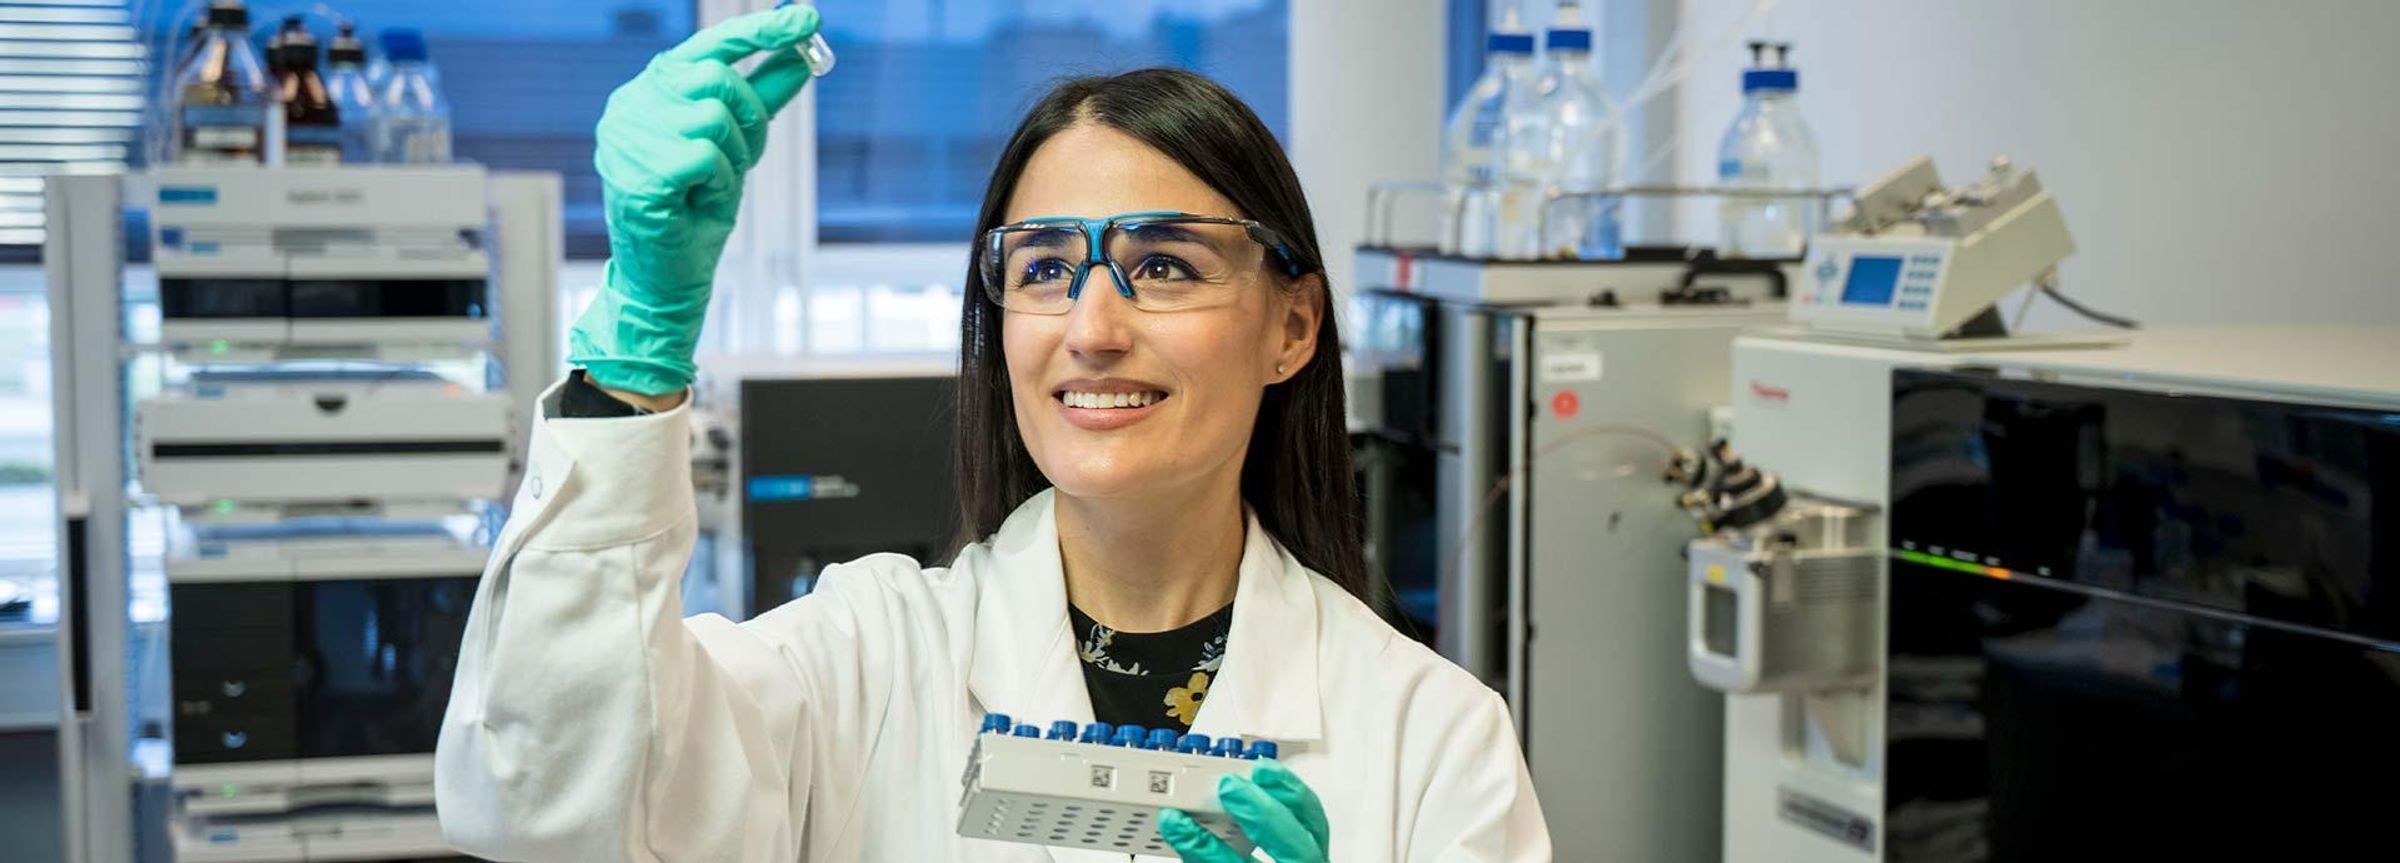 Scientist@Sanofi - Soraya Hölper: „Auf der Suche nach der Nadel im Heuhaufen“